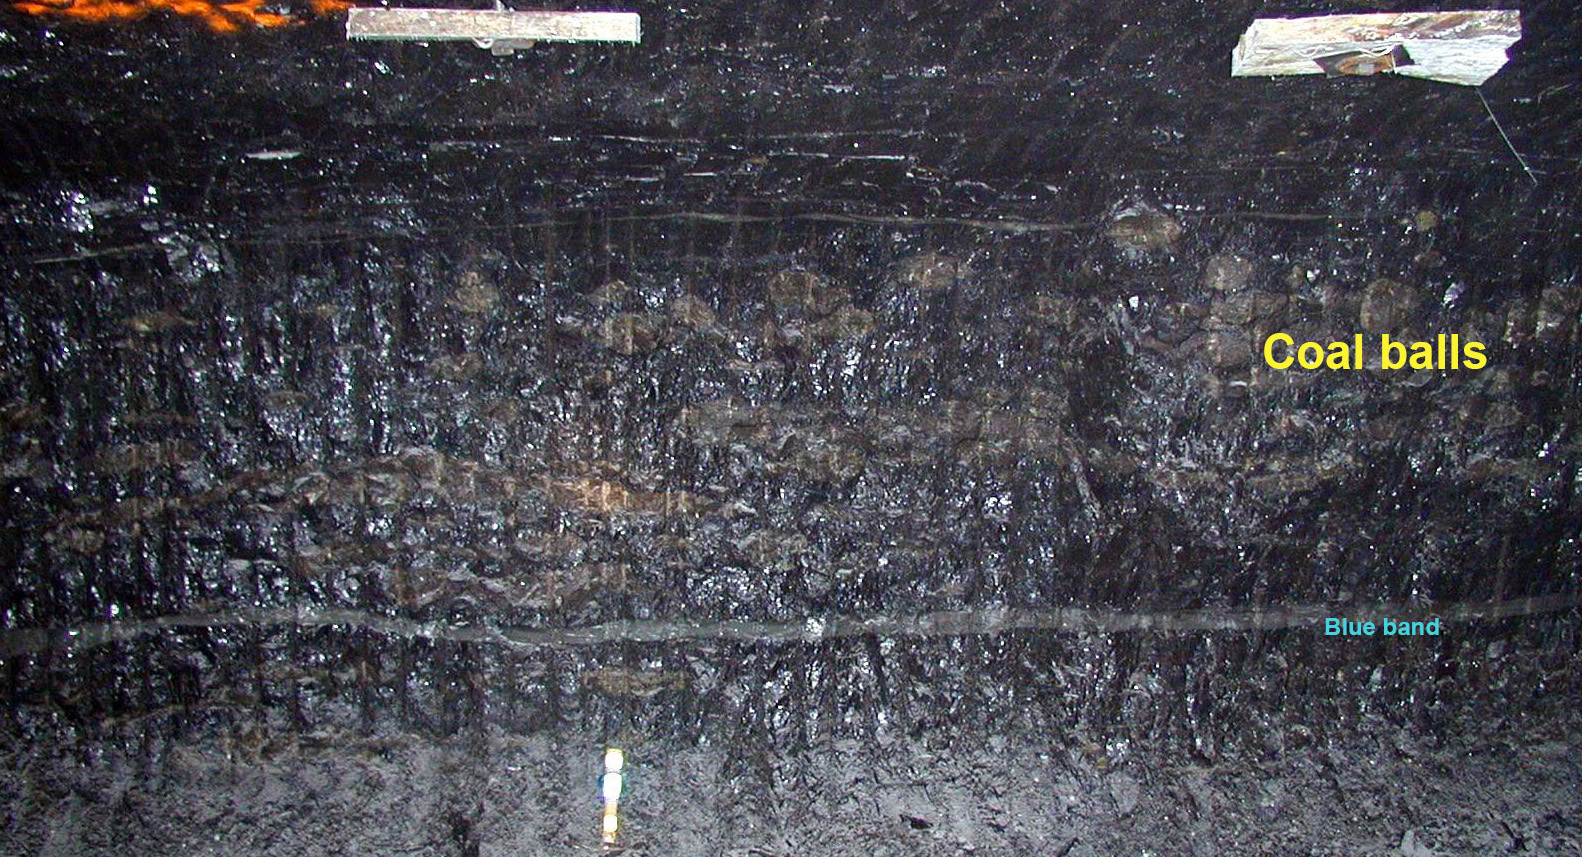 گلوله های کوچک زغال سنگ در بستر زغال سنگ هرین در یک معدن زیرزمینی متمرکز شده اند.  توپ‌های زغال‌سنگ رنگ قهوه‌ای مایل به قرمز دارند و به‌طور محلی «سنگ قرمز» نامیده می‌شوند.  نوار آبی یک جدایی منطقه ای در زغال سنگ است.  عکس از جان پاپ.